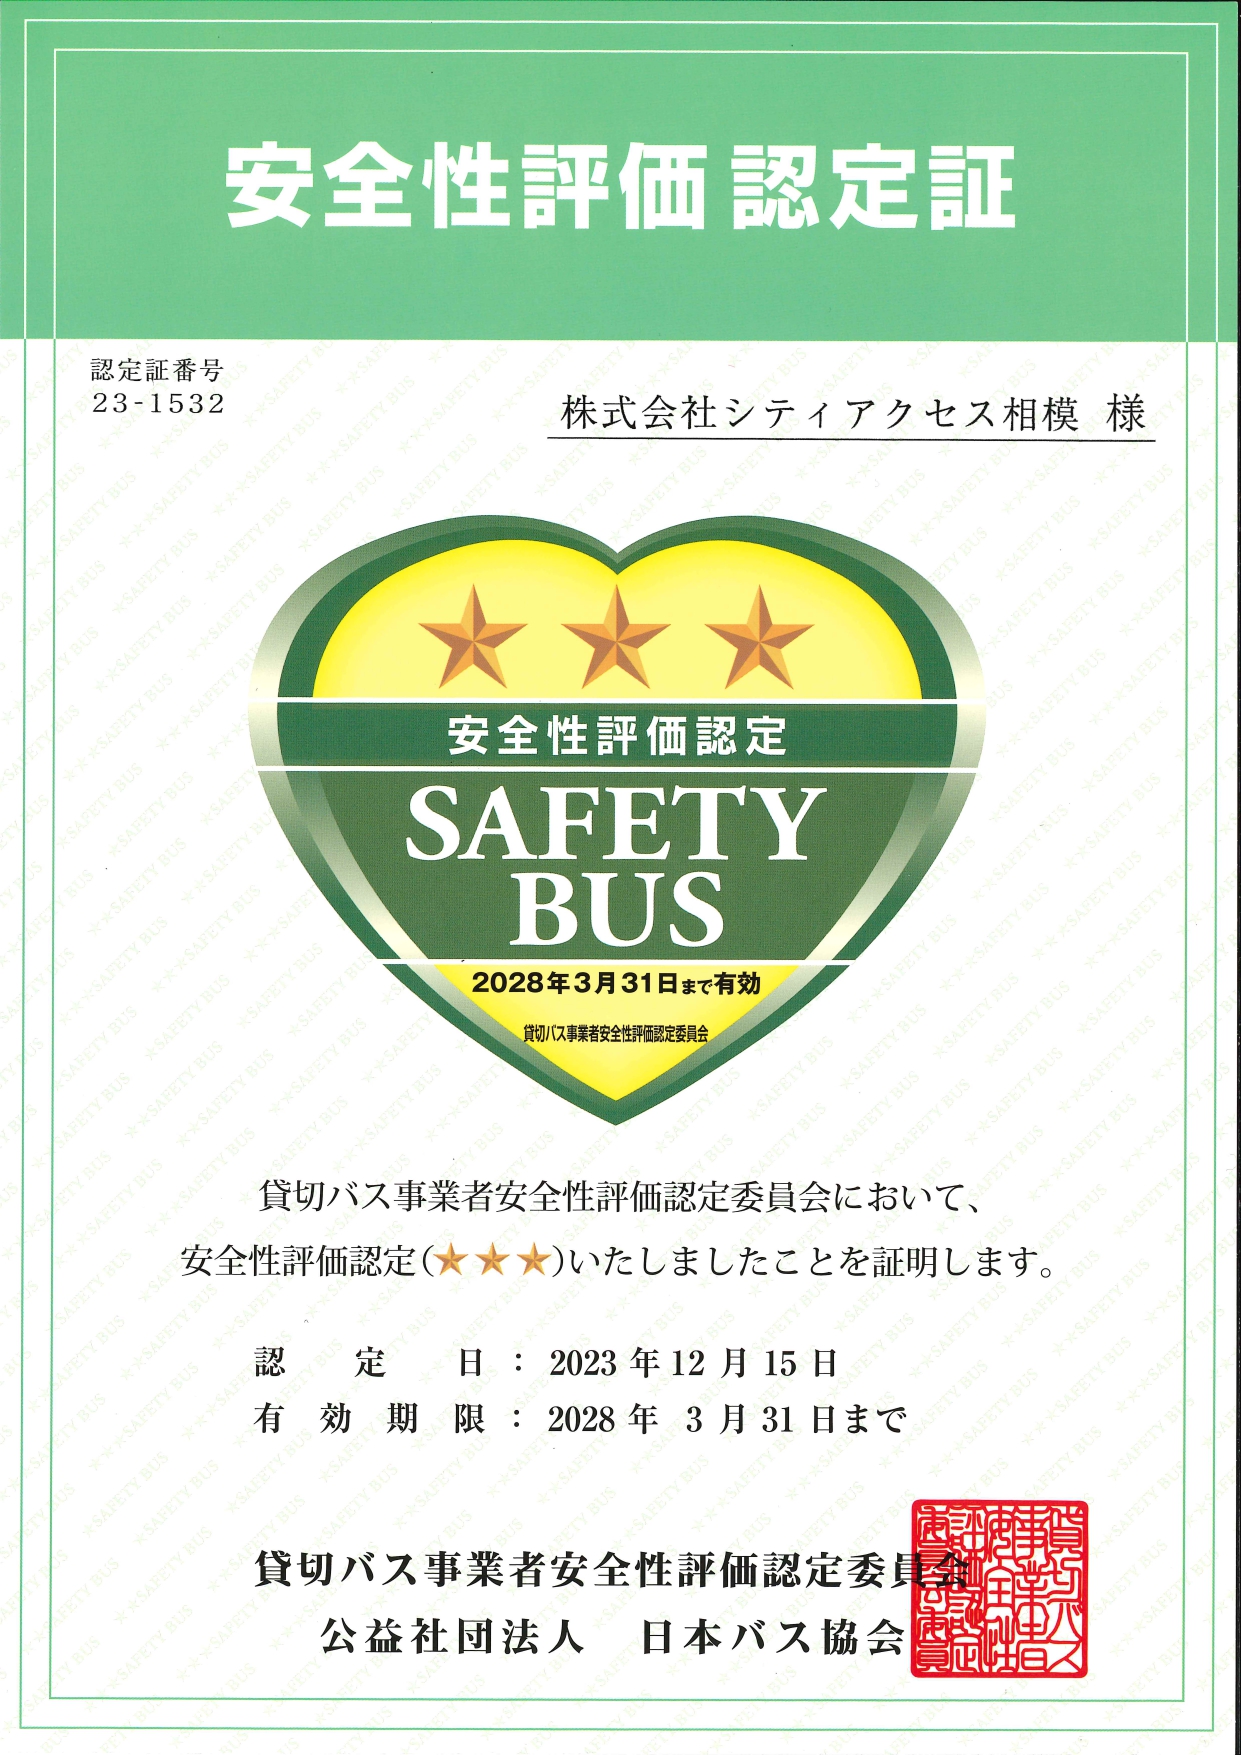 貸切バス事業者安全性評価認定制度三ツ星(4年更新)認定獲得しました